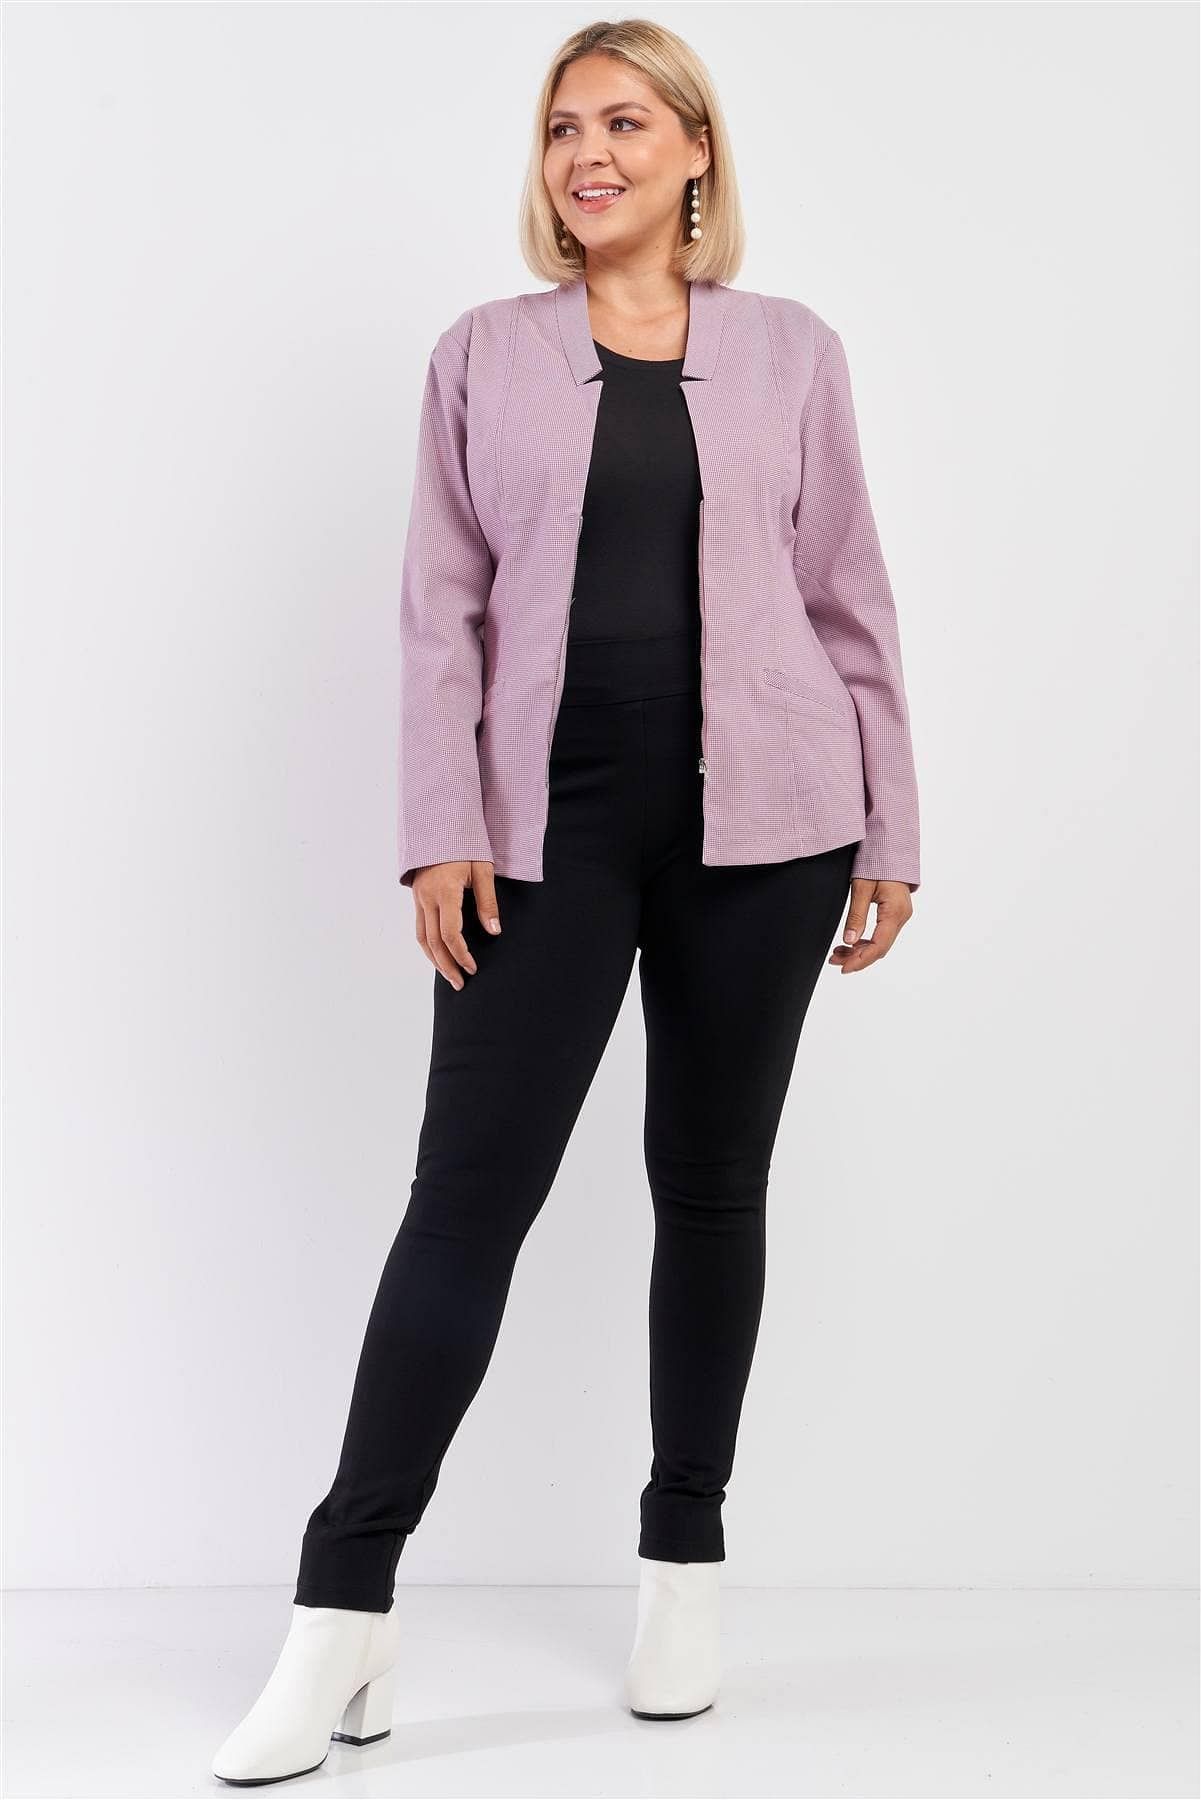 Mauve Plus Size Long Sleeve Jacket - Shopping Therapy 2XL Jacket